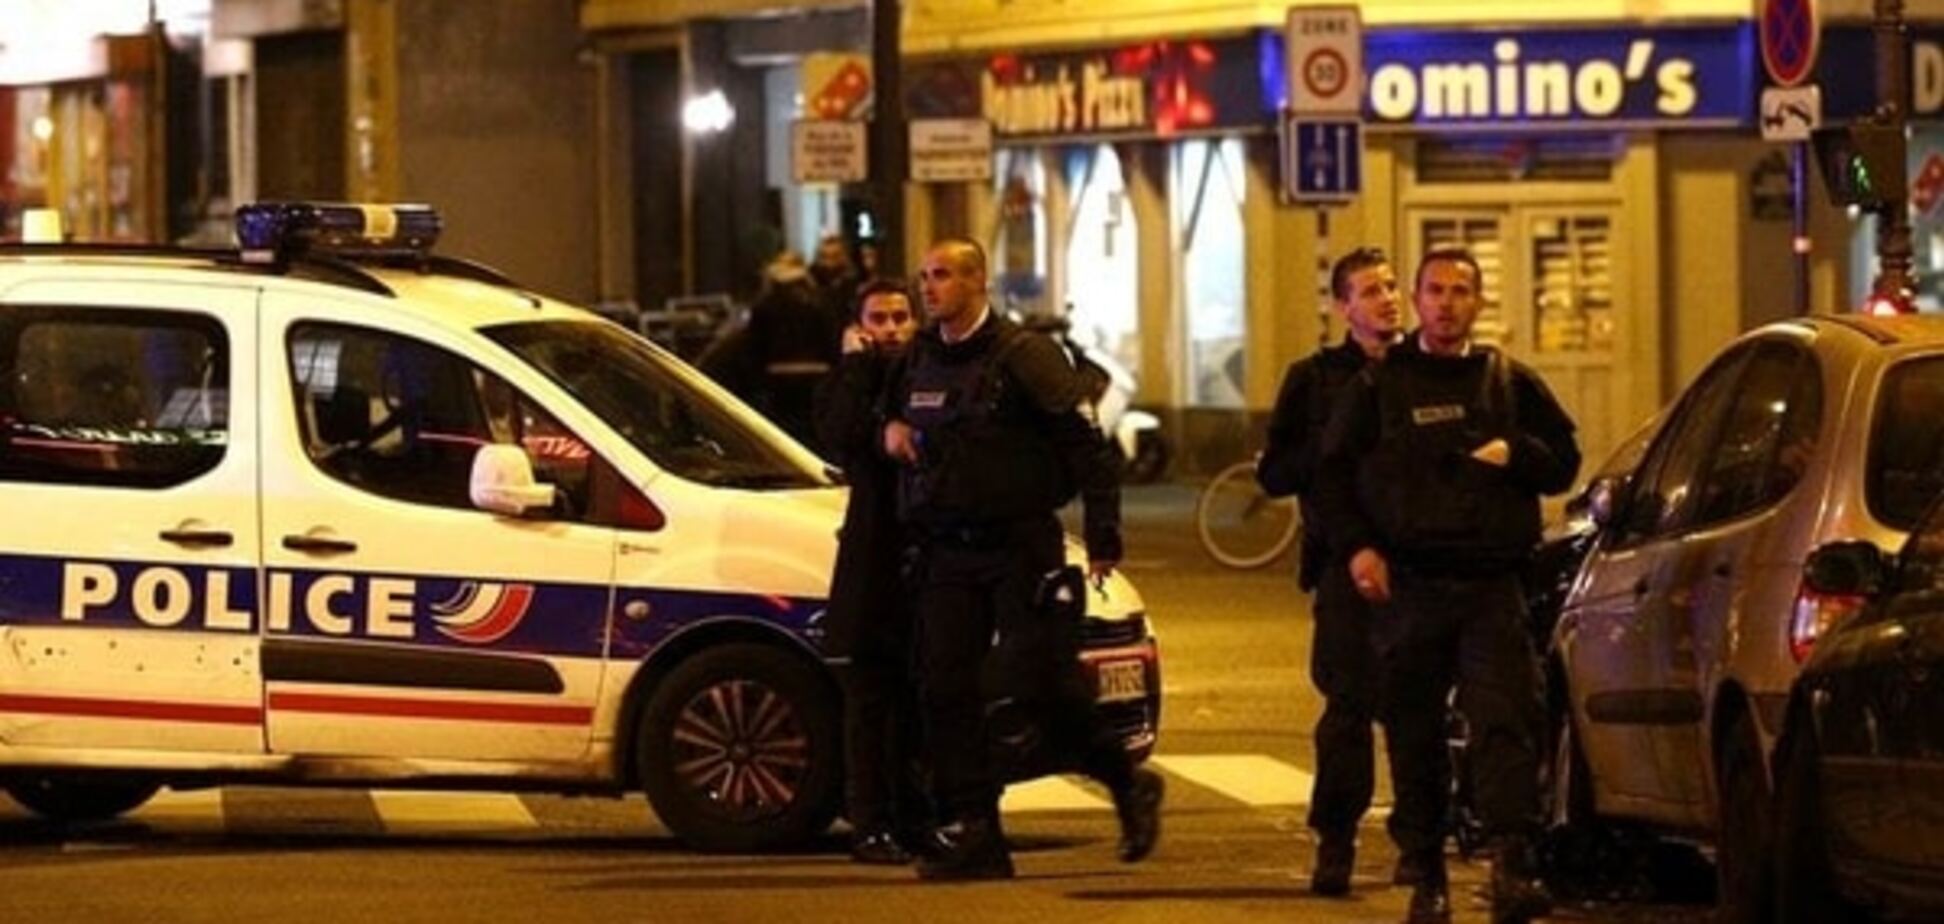 Теракты во Франции: прокурор рассказал подробности расследования. Опубликована инфографика